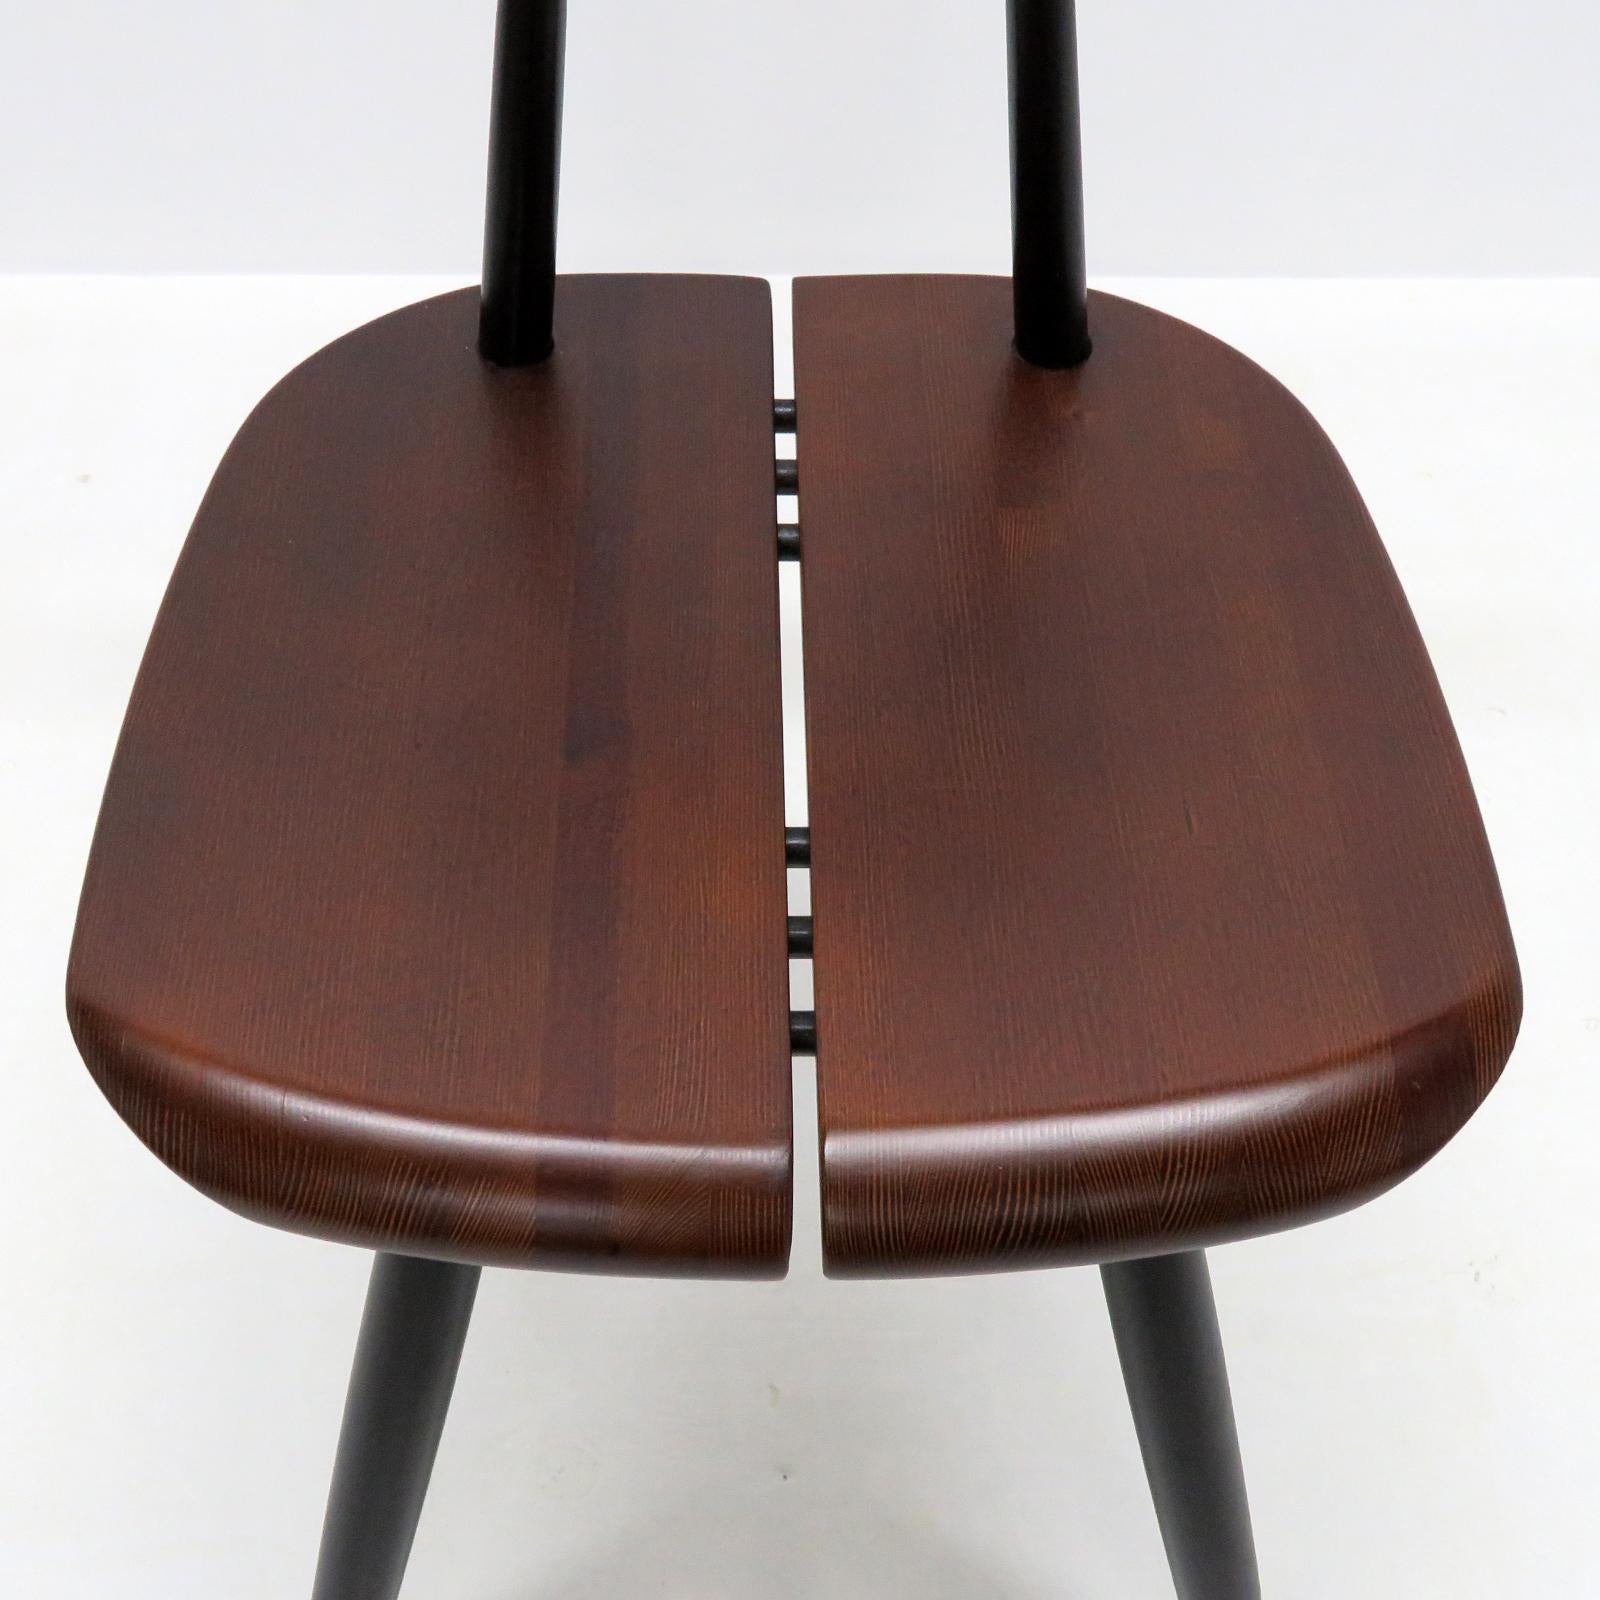 Finnish Ilmari Tapiovaara, ‘Pirkka’ Chairs, 1955 For Sale